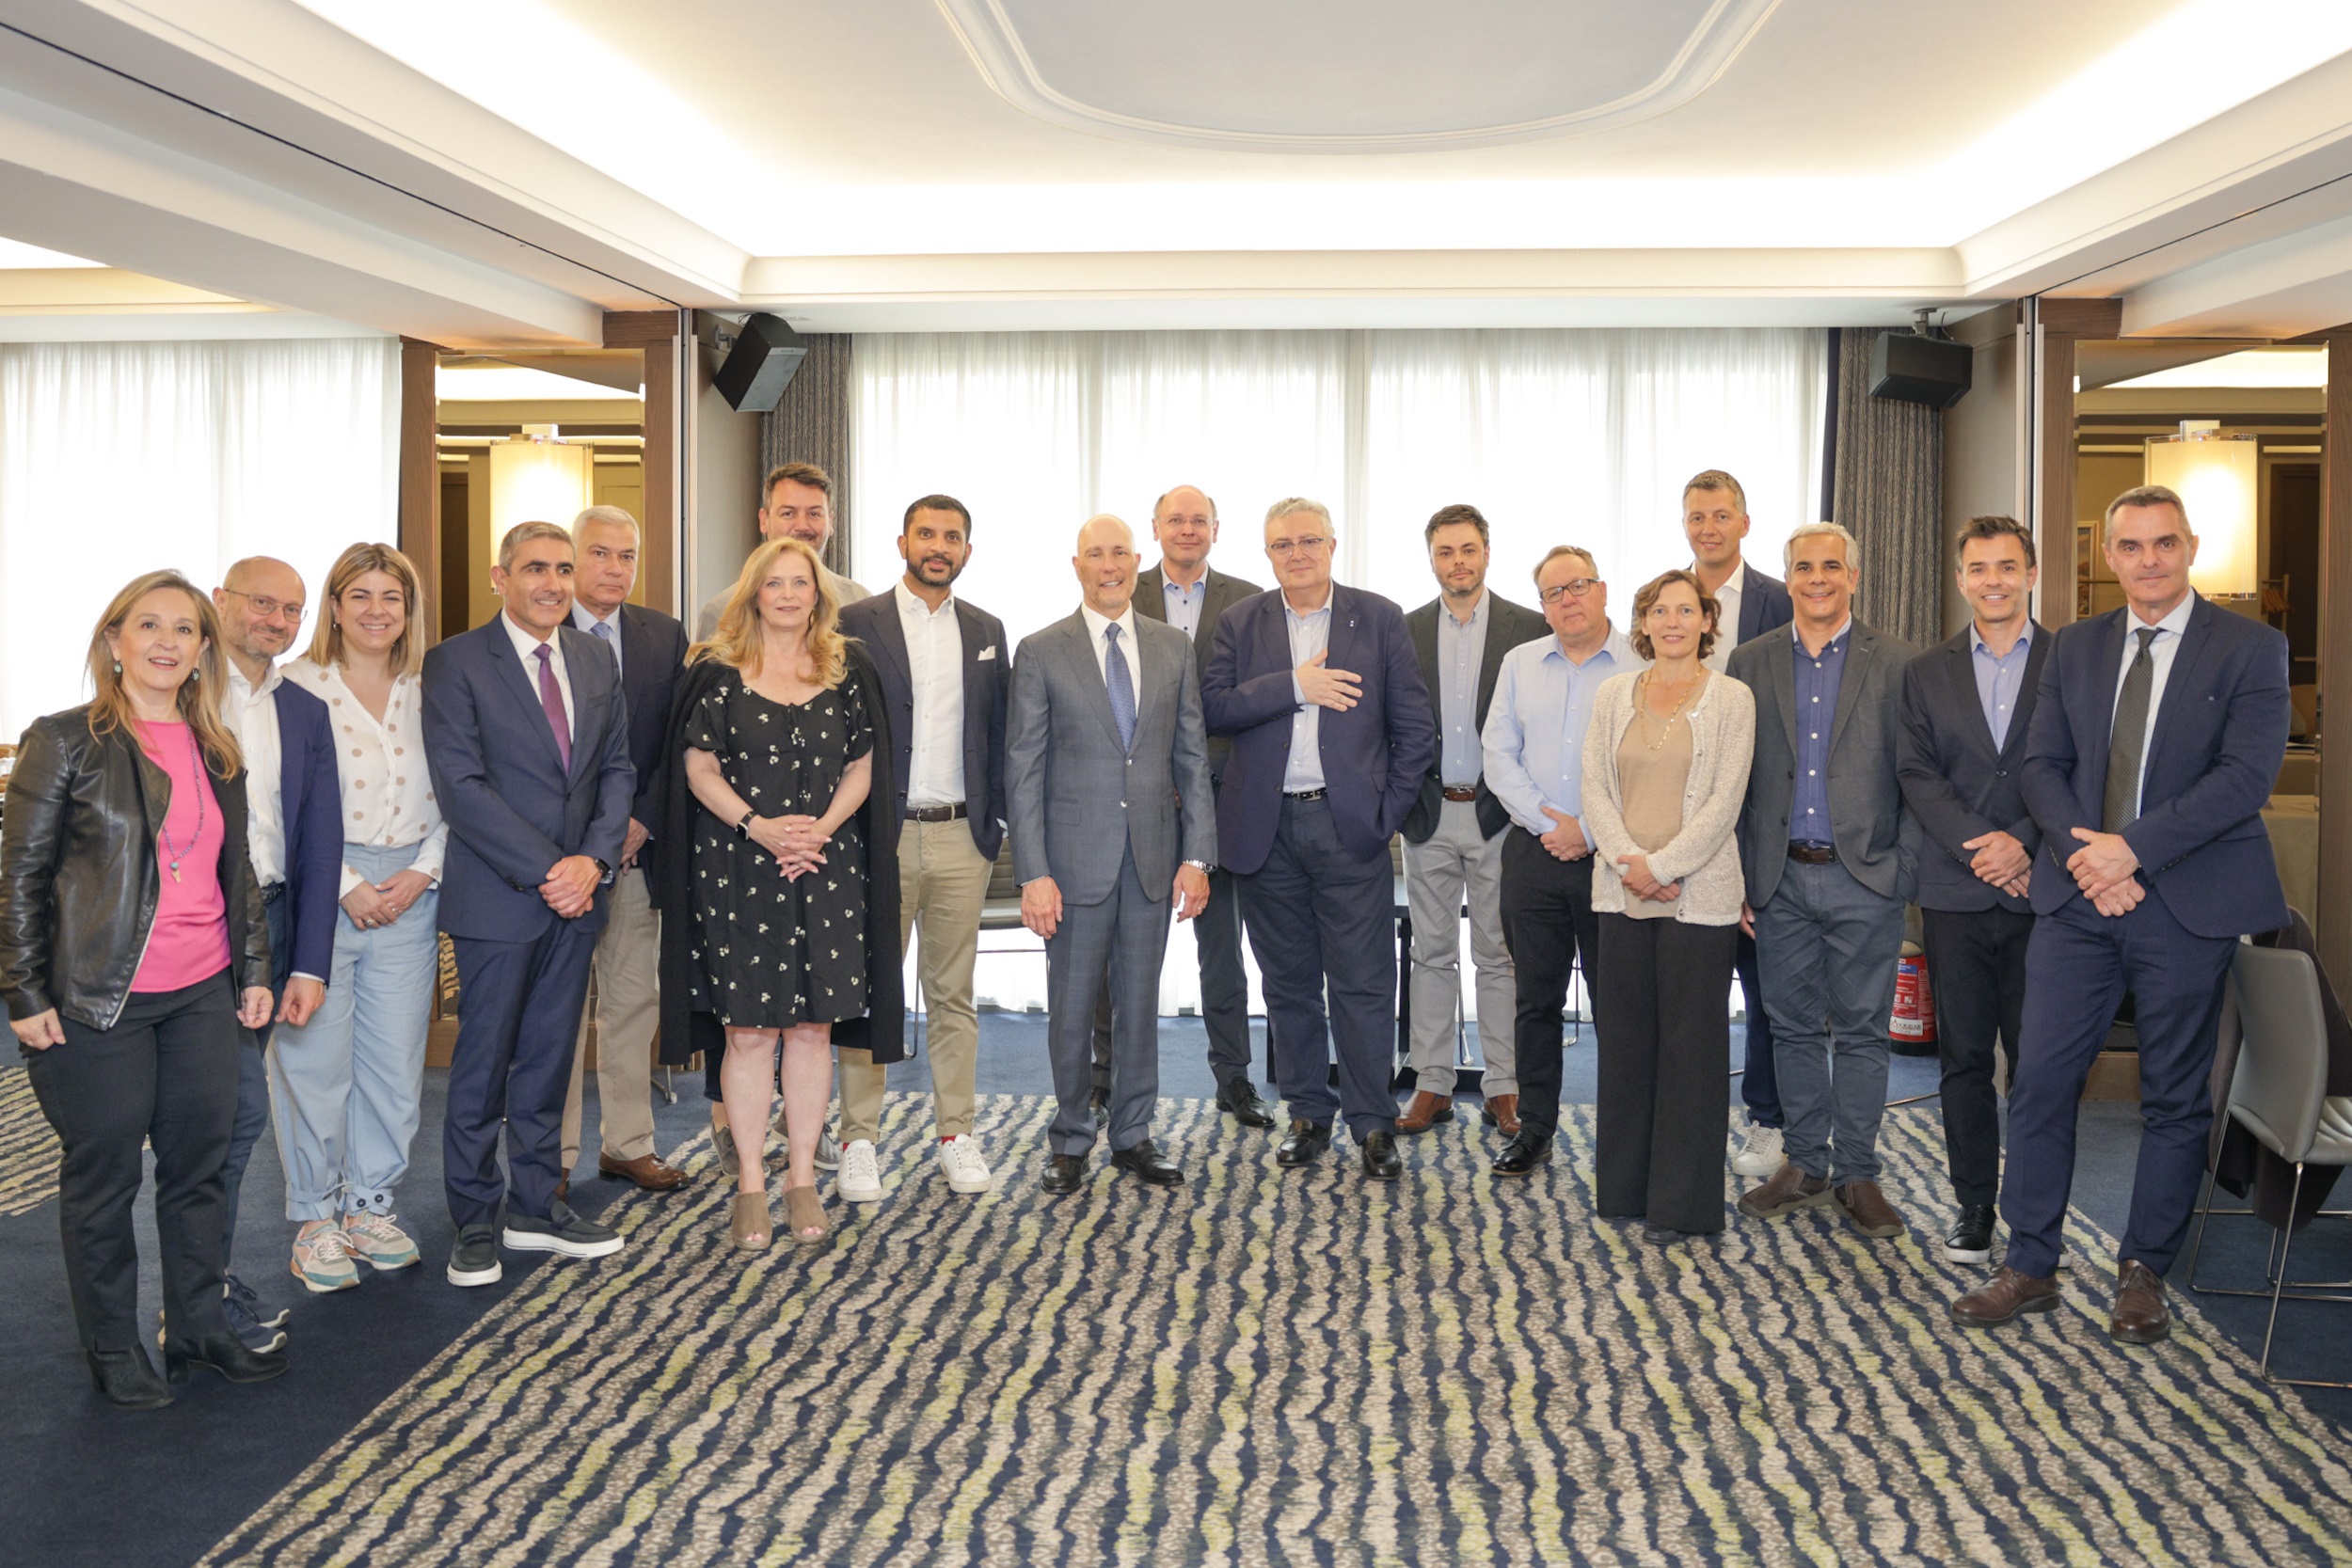 Η ΕΣΕΕ διοργάνωσε στην Αθήνα την Εαρινή Συνάντηση της Παγκόσμιας Ομοσπονδίας Ενώσεων Λιανικού Εμπορίου (FIRA)